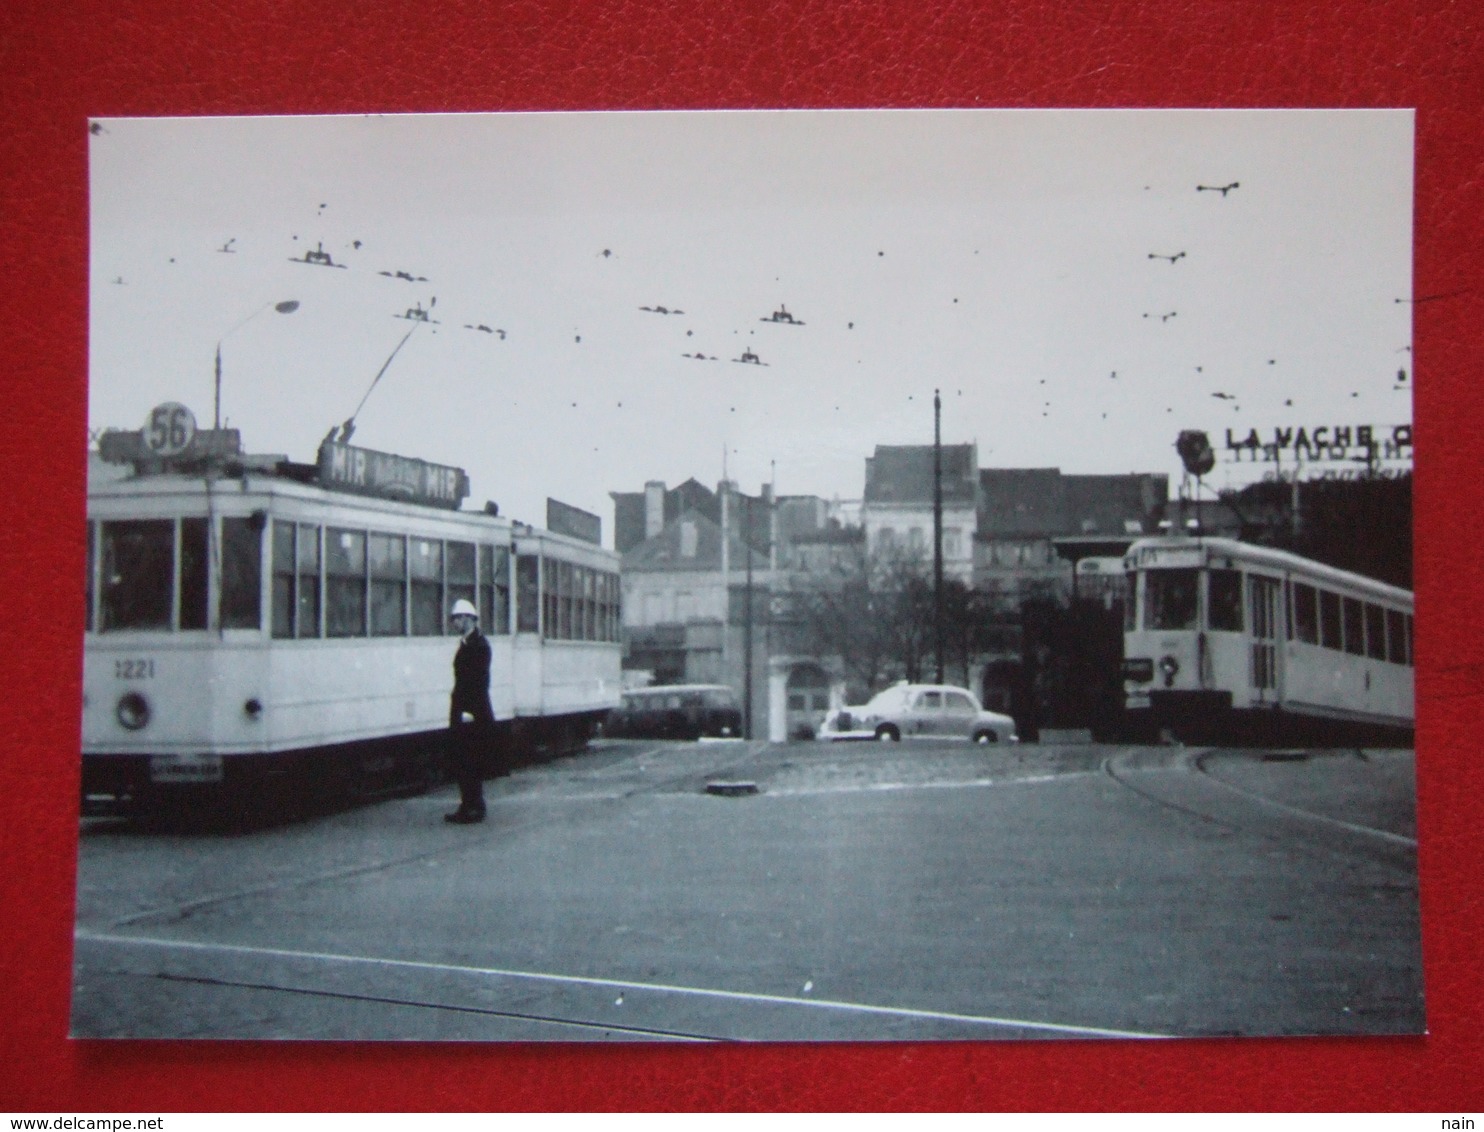 BELGIQUE - BRUXELLES - PHOTO 15 X 10 - TRAM - TRAMWAY - LIGNE 56 - PUB : LA VACHE QUI..- 1 AGENT ... - Public Transport (surface)